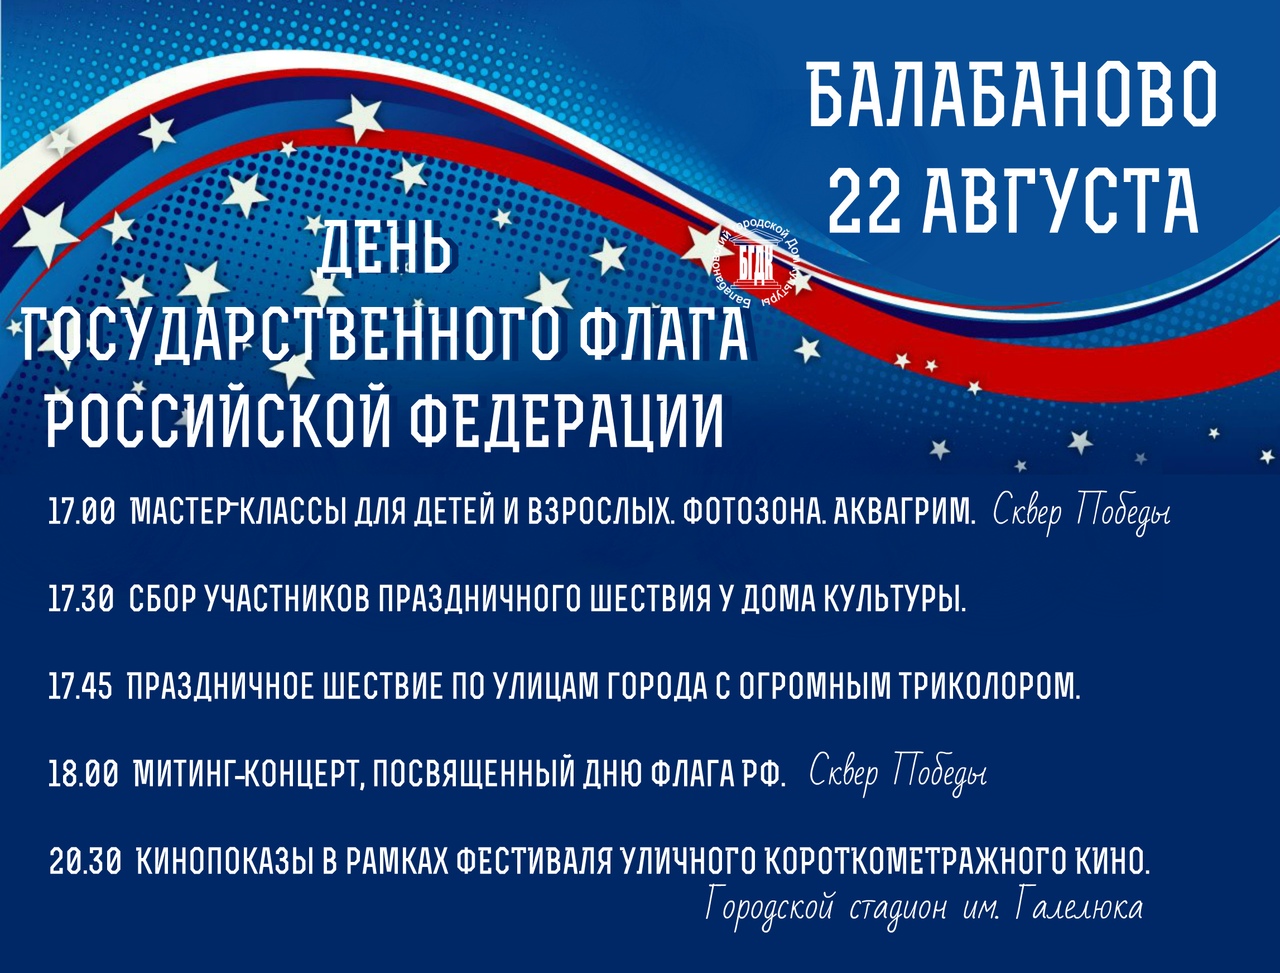 22 августа Балабаново вместе со всей страной отметит День Государственного флага Российской Федерации